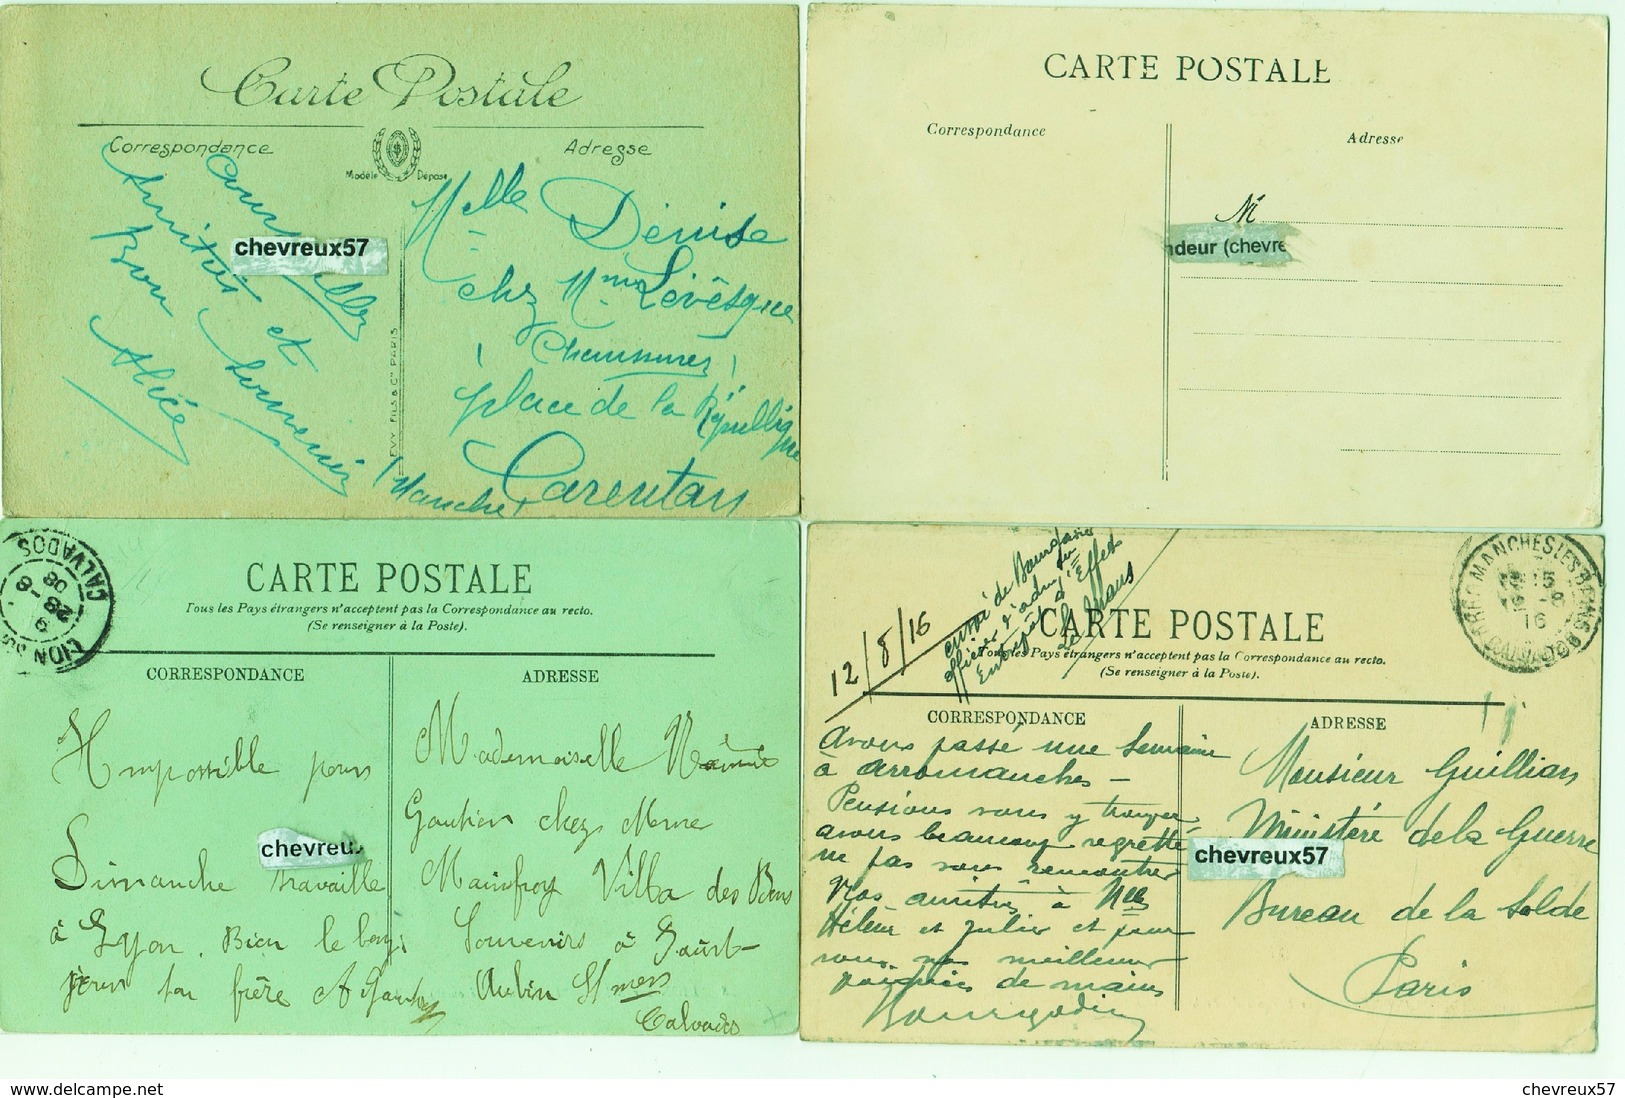 LOT 60 - VILLES ET VILLAGES DE FRANCE - 32 cartes anciennes dont 18 NORMANDIE